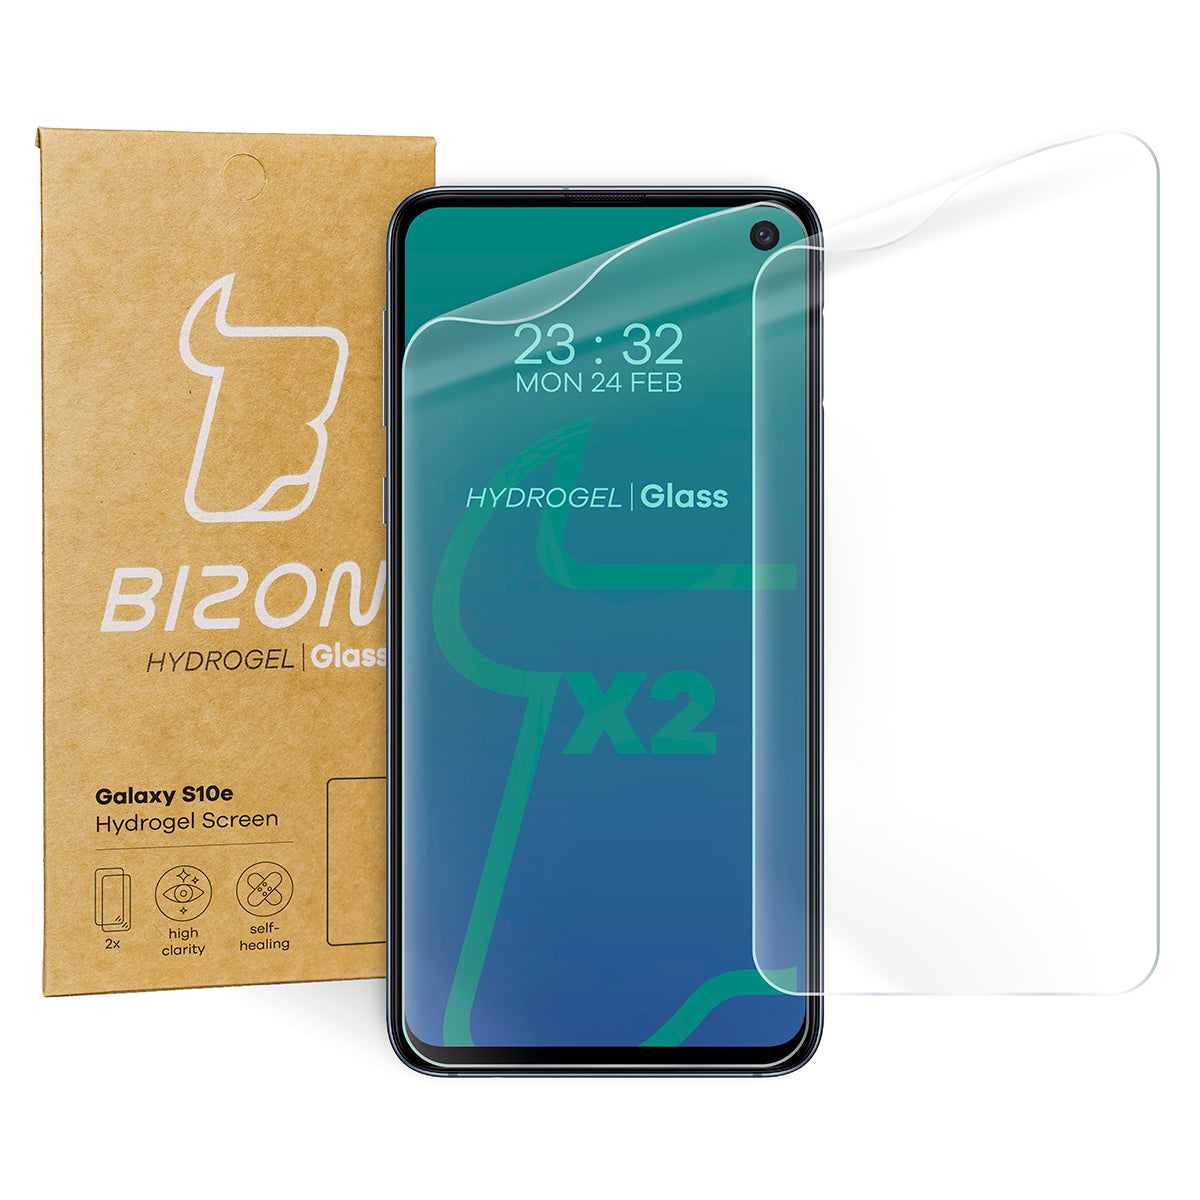 Hydrogel Folie für den Bildschirm Bizon Glass Hydrogel, Galaxy S10e, 2 Stück